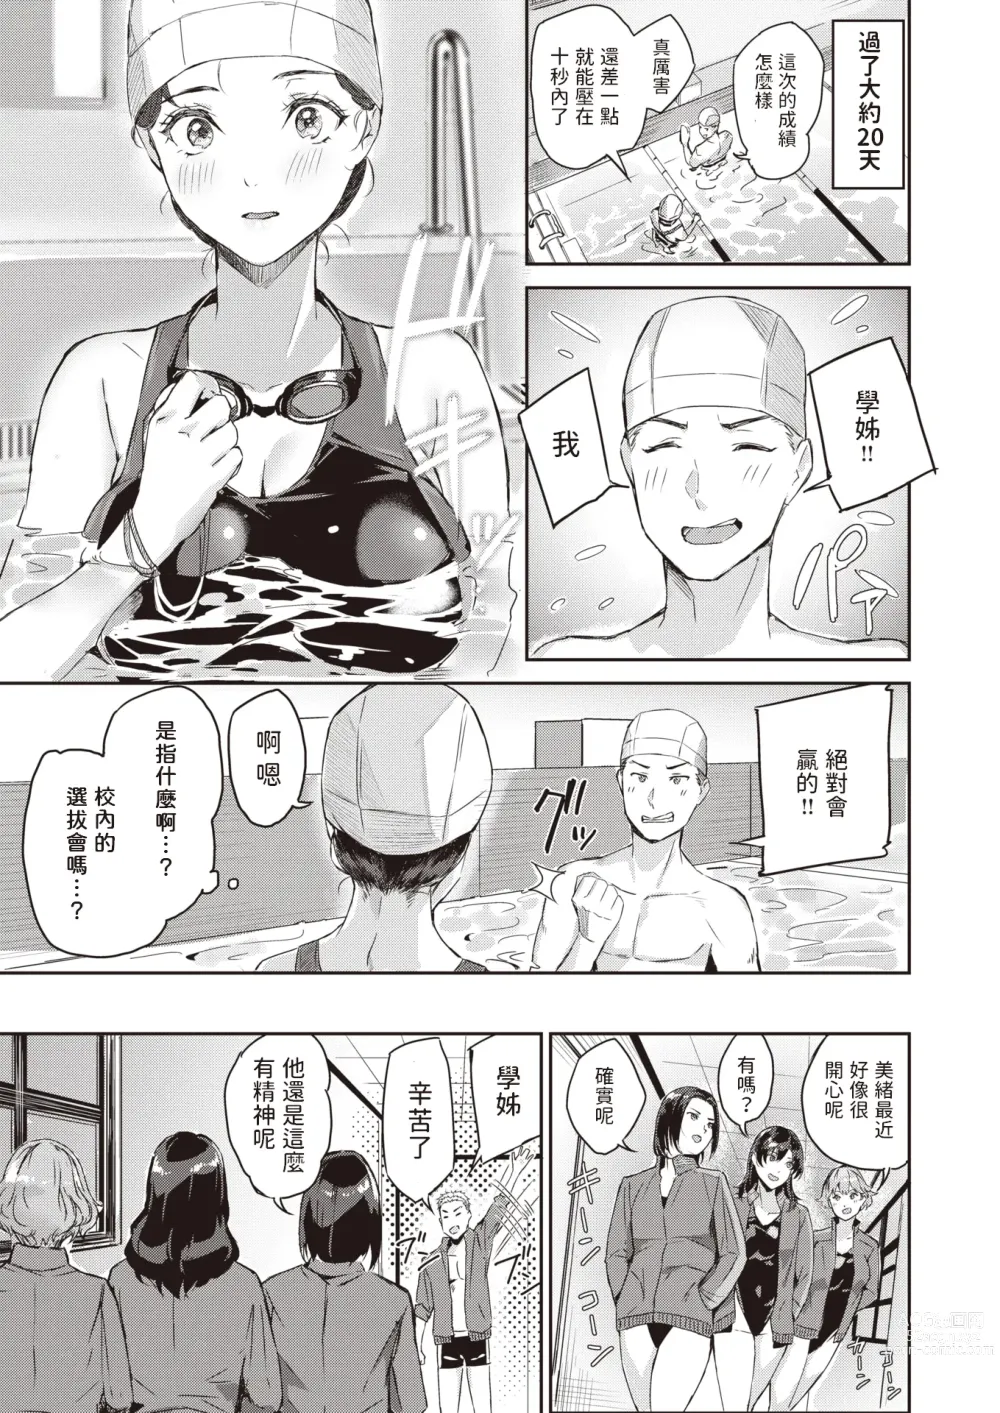 Page 5 of manga Splash!